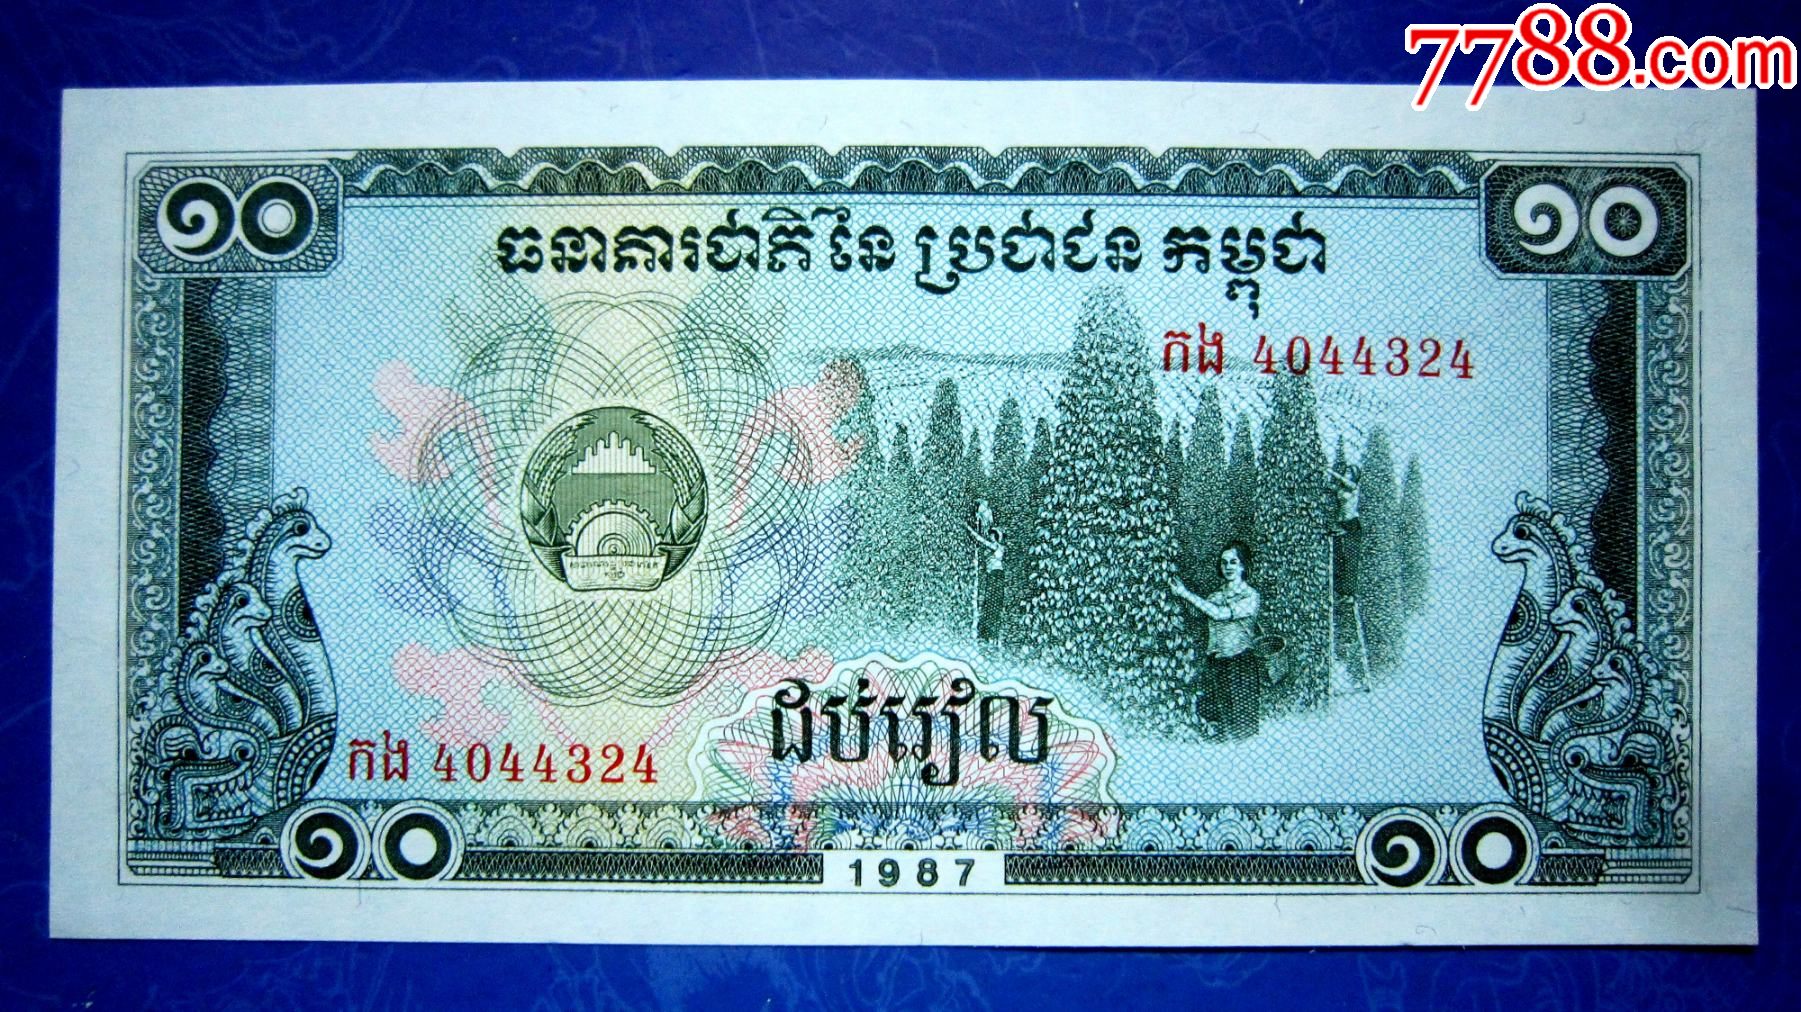 柬埔寨纸币发行简史_瑞尔_高棉_法国